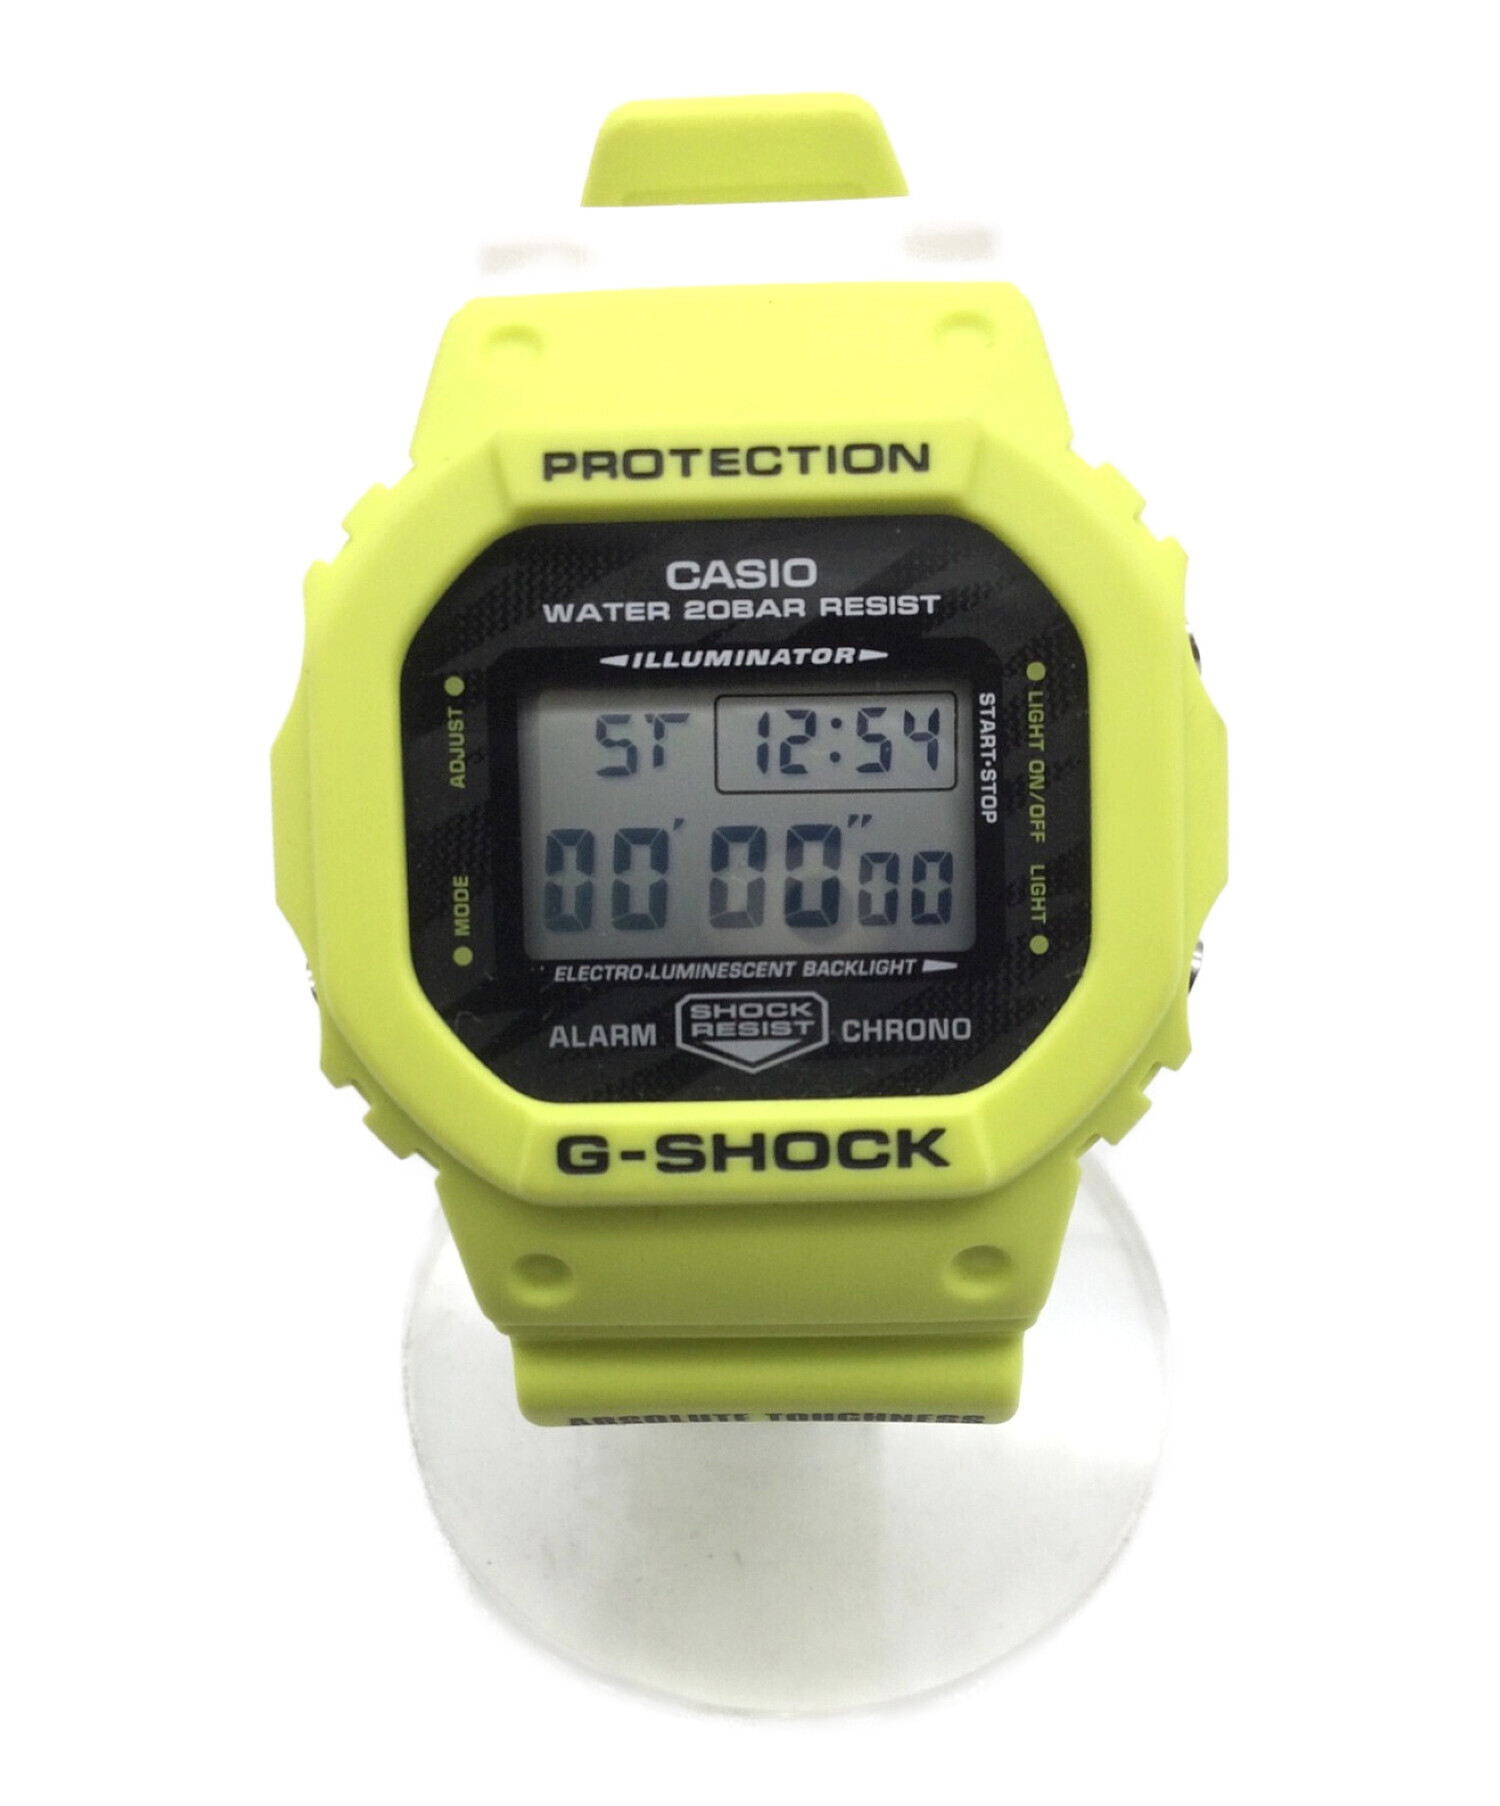 CASIO (カシオ) デジタル腕時計 G-SHOCK ライトニング イエロー